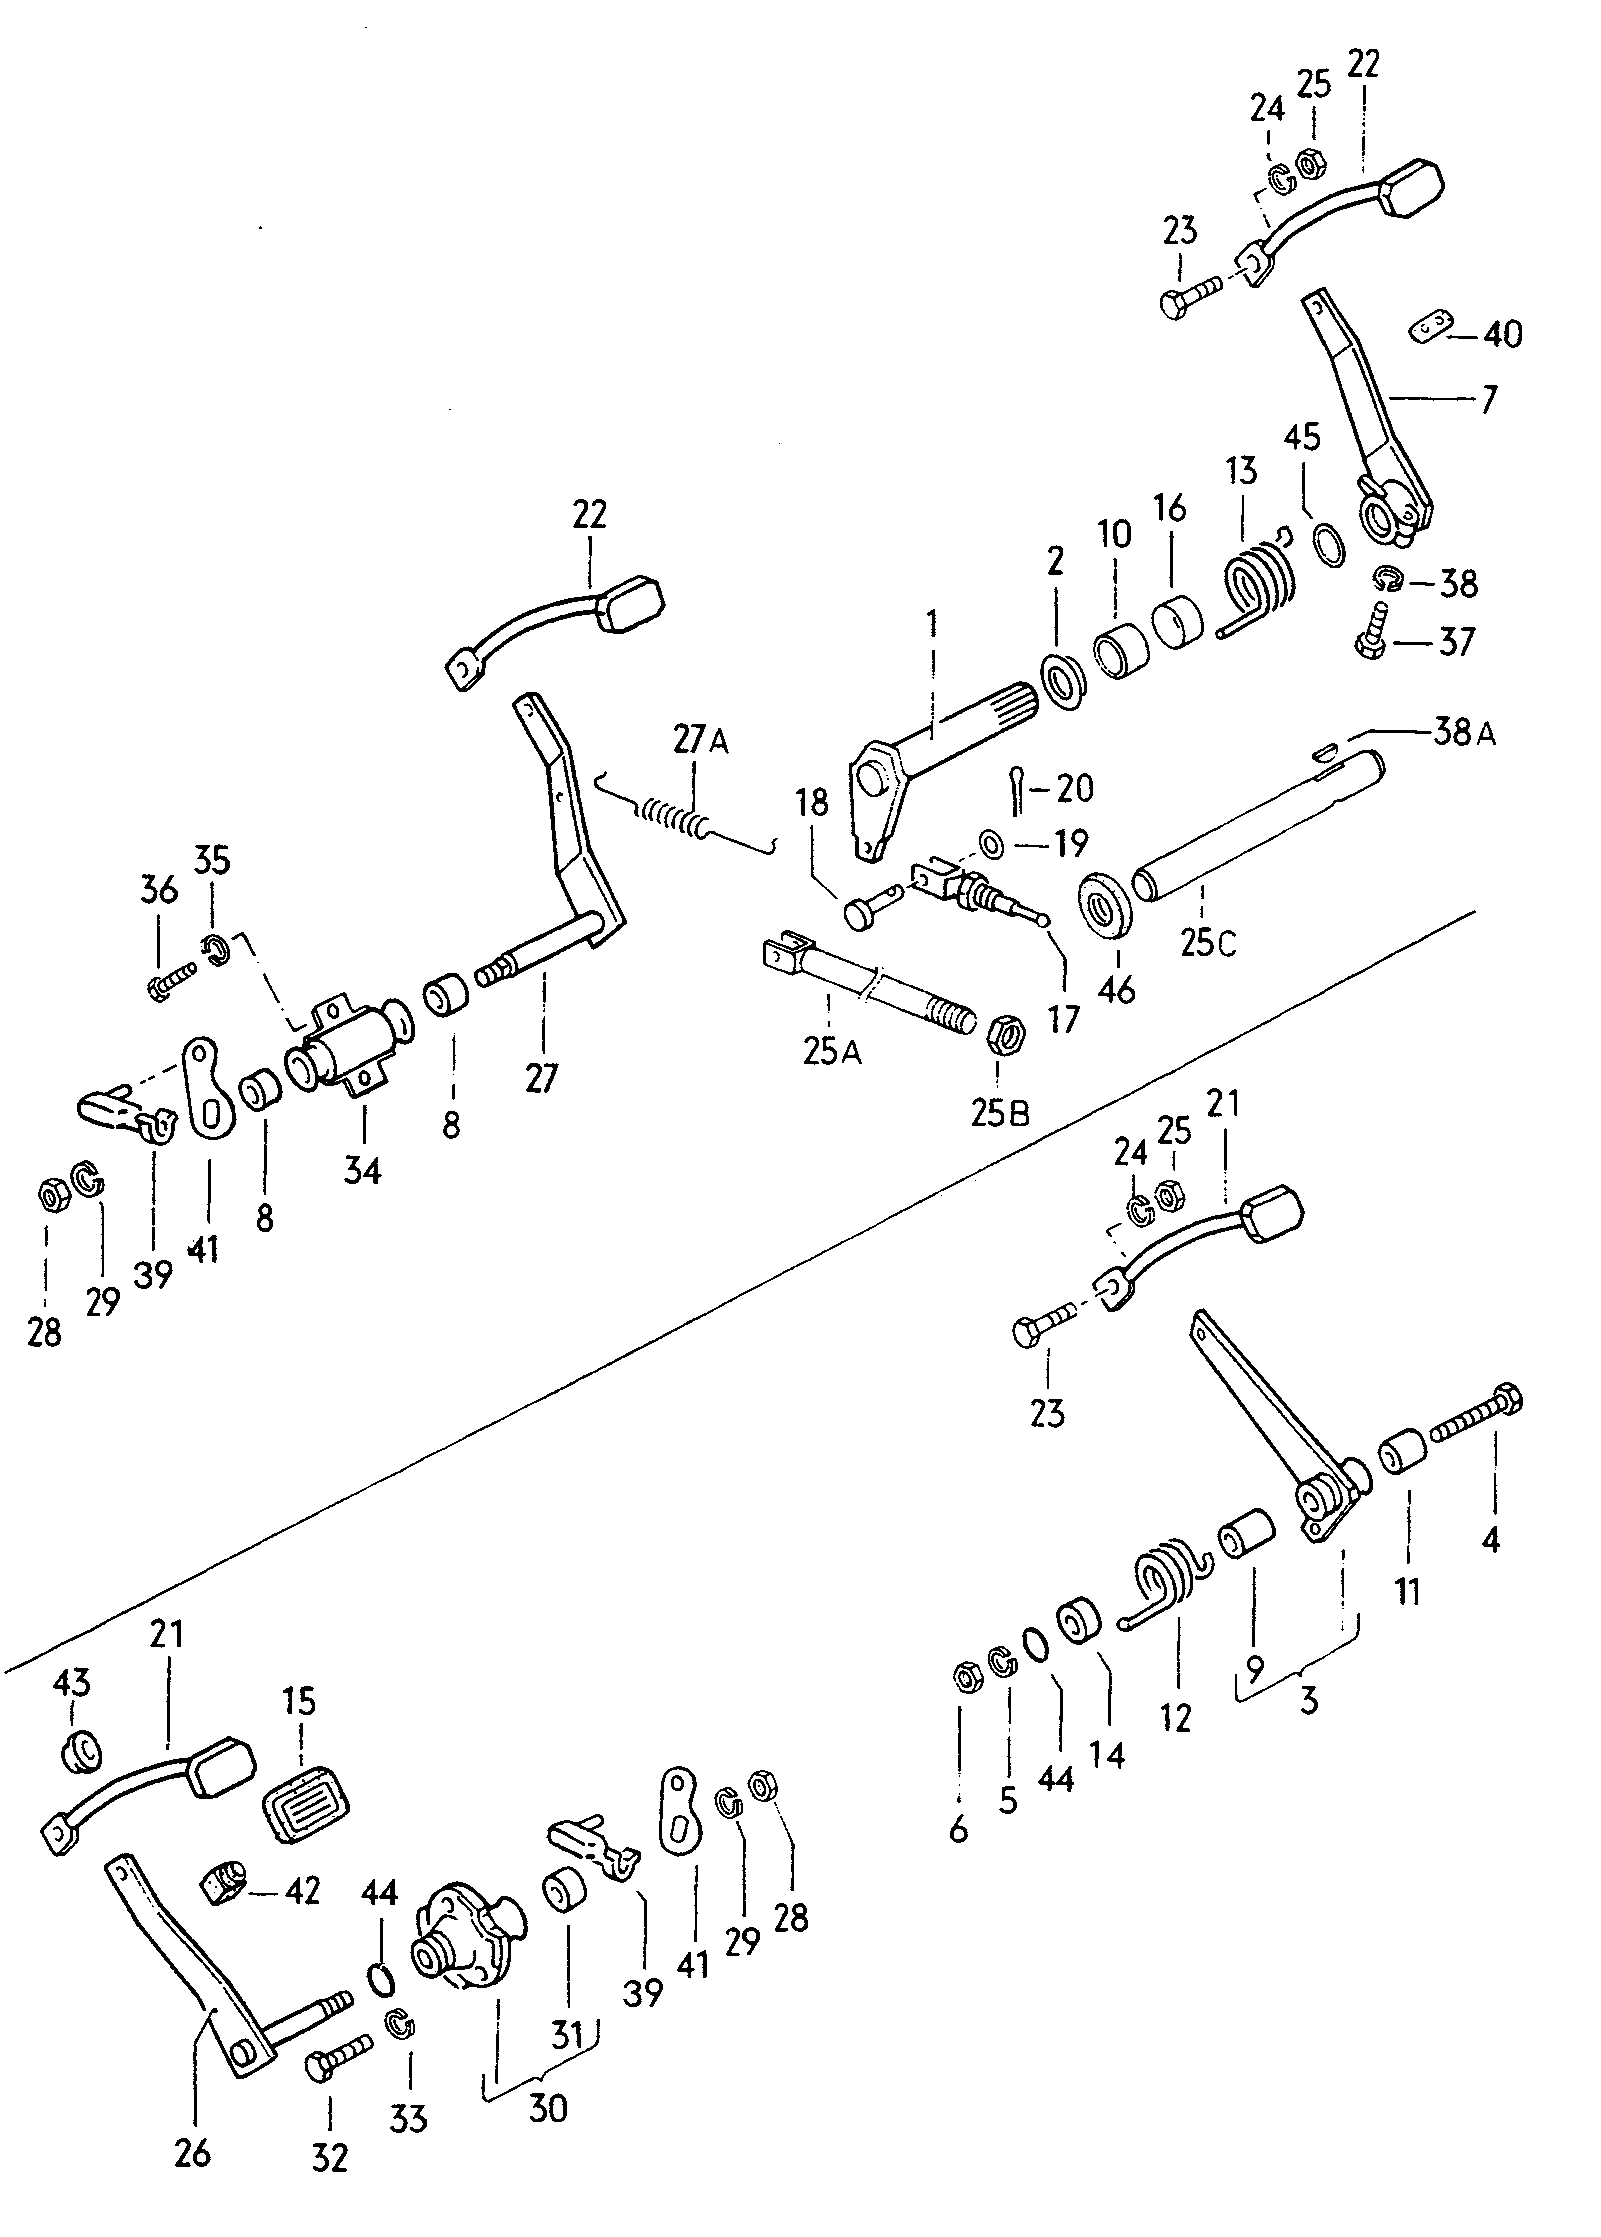 Brems- und Kupplungsfusshebel-
werk - Typ 2/syncro(T2)  